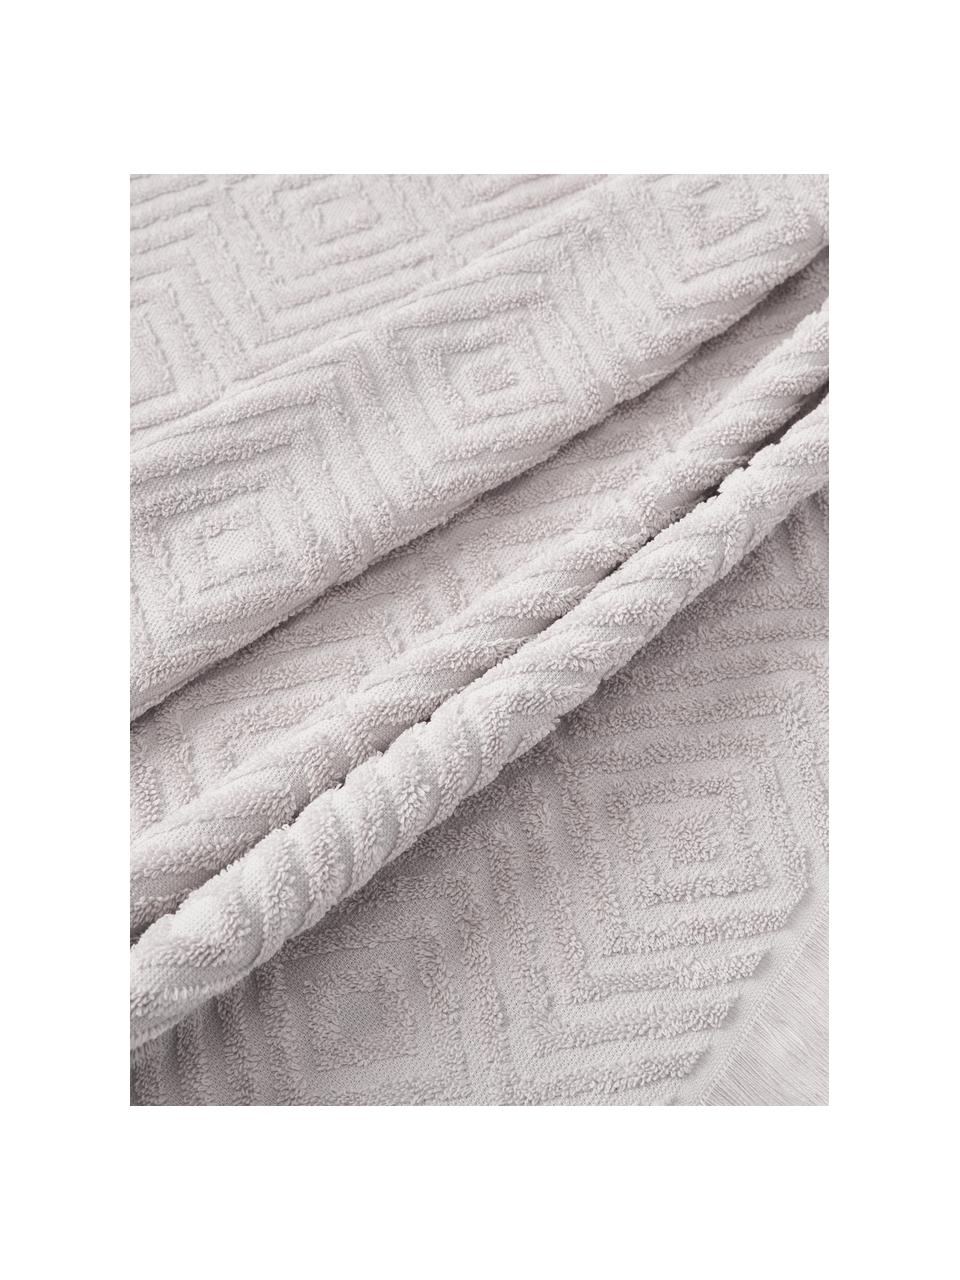 Set di asciugamani con motivo in rilievo Jacqui, varie misure, Grigio chiaro, Set di 4 (asciugamano e telo da bagno)